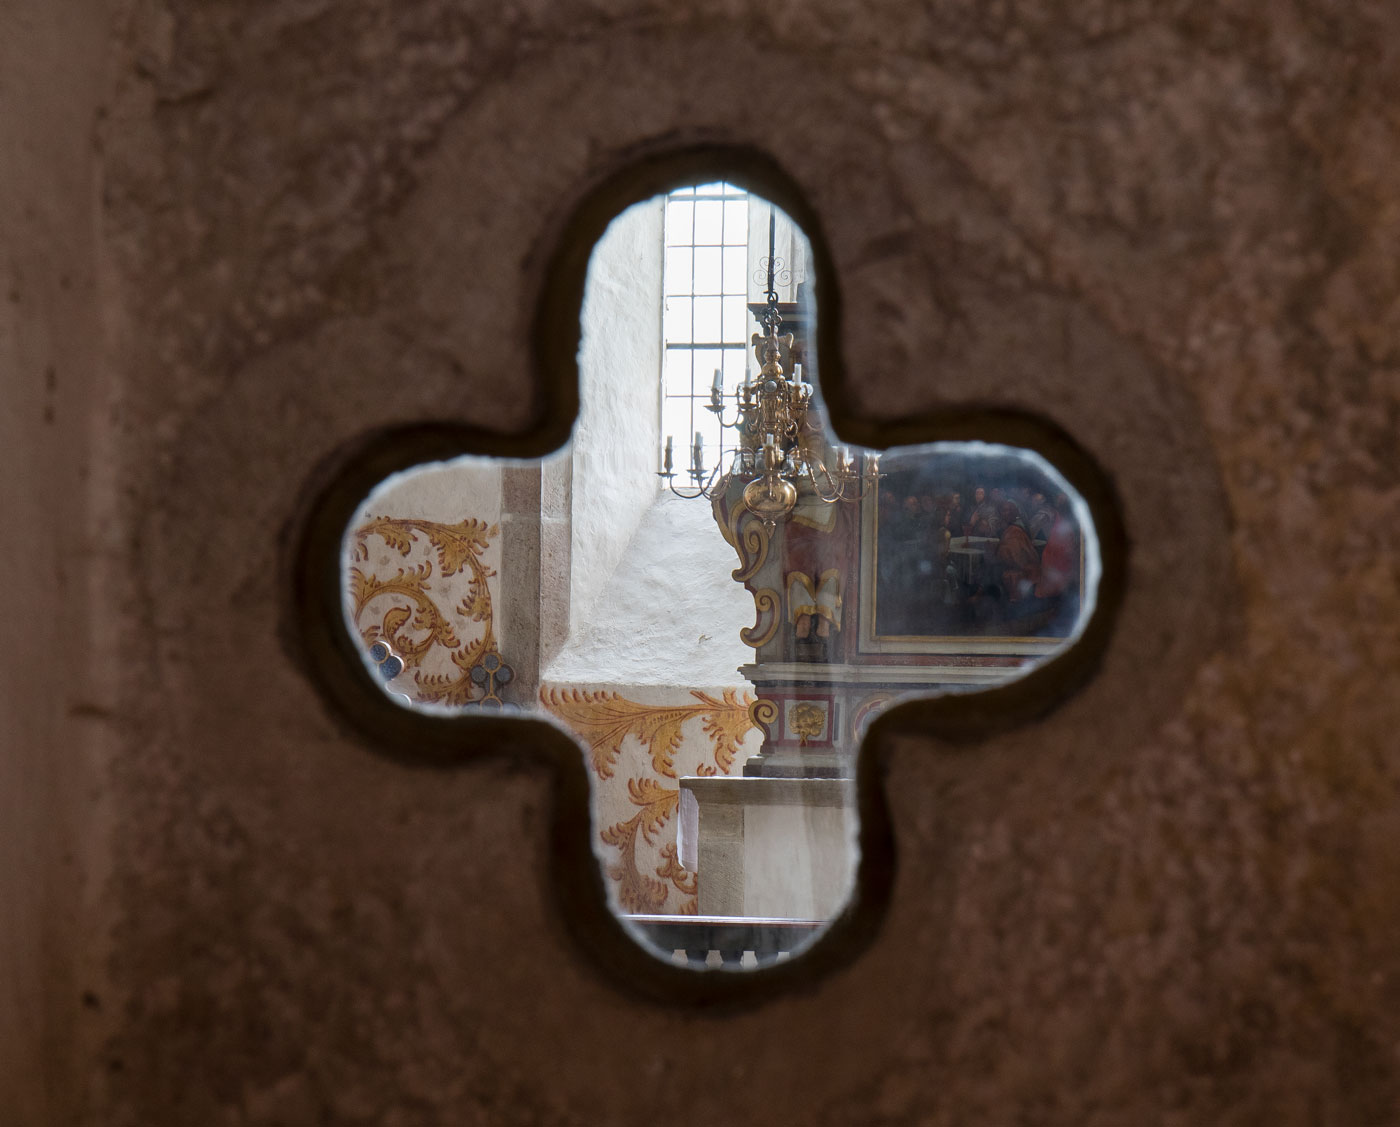 Fyrpassformad glugg från hagioskop in mot kyrkorummet - Bros kyrka